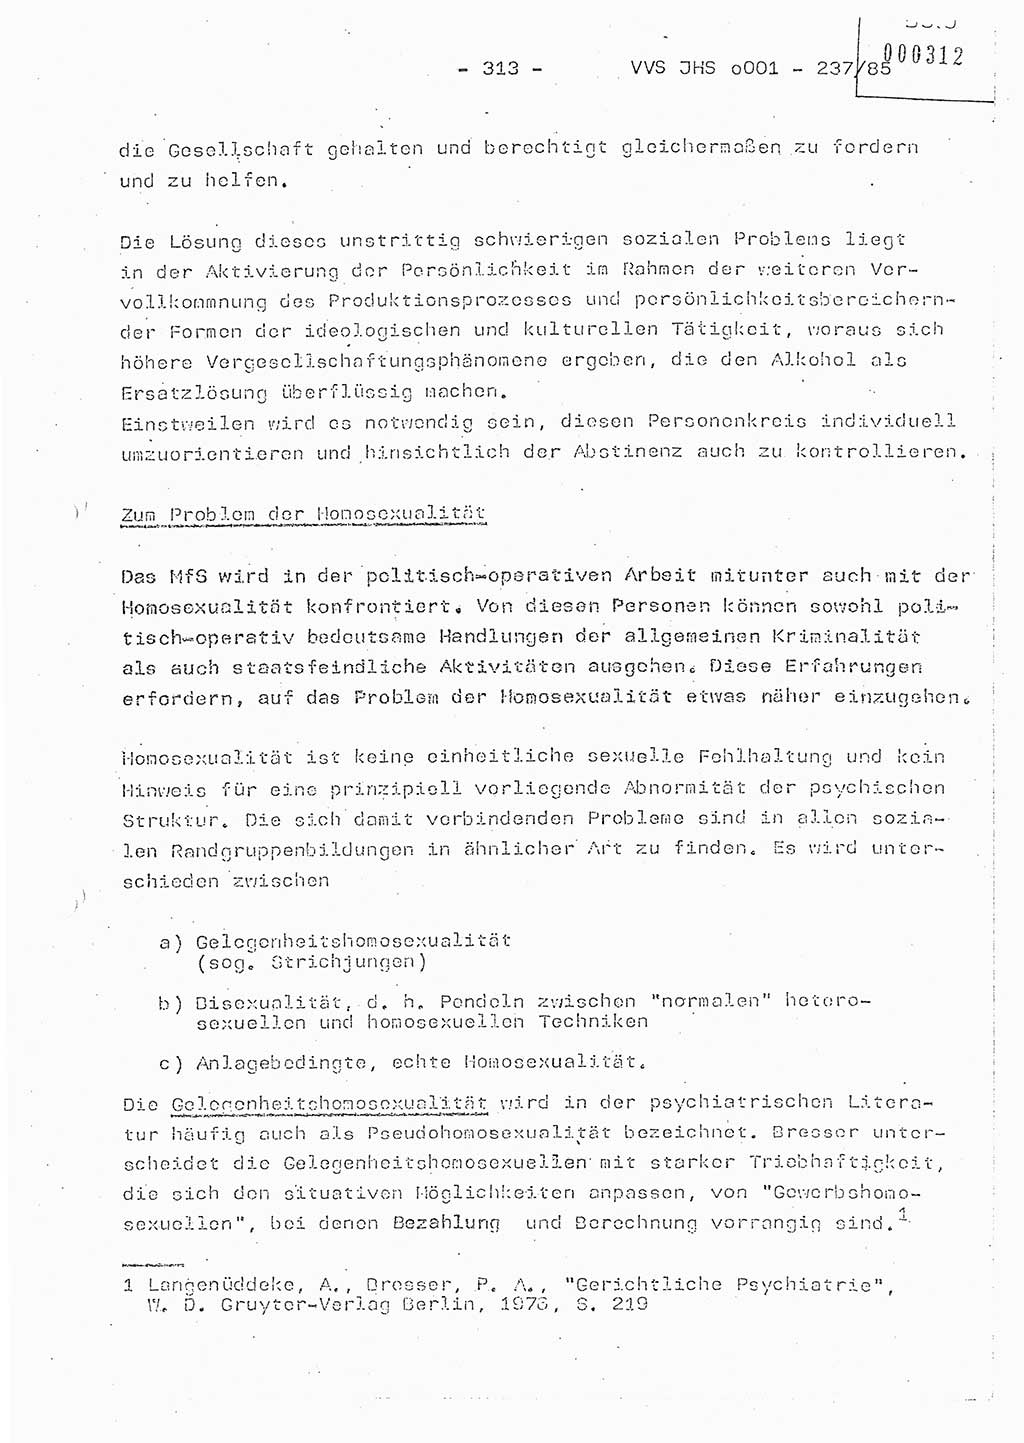 Dissertation Oberstleutnant Peter Jakulski (JHS), Oberstleutnat Christian Rudolph (HA Ⅸ), Major Horst Böttger (ZMD), Major Wolfgang Grüneberg (JHS), Major Albert Meutsch (JHS), Ministerium für Staatssicherheit (MfS) [Deutsche Demokratische Republik (DDR)], Juristische Hochschule (JHS), Vertrauliche Verschlußsache (VVS) o001-237/85, Potsdam 1985, Seite 313 (Diss. MfS DDR JHS VVS o001-237/85 1985, S. 313)